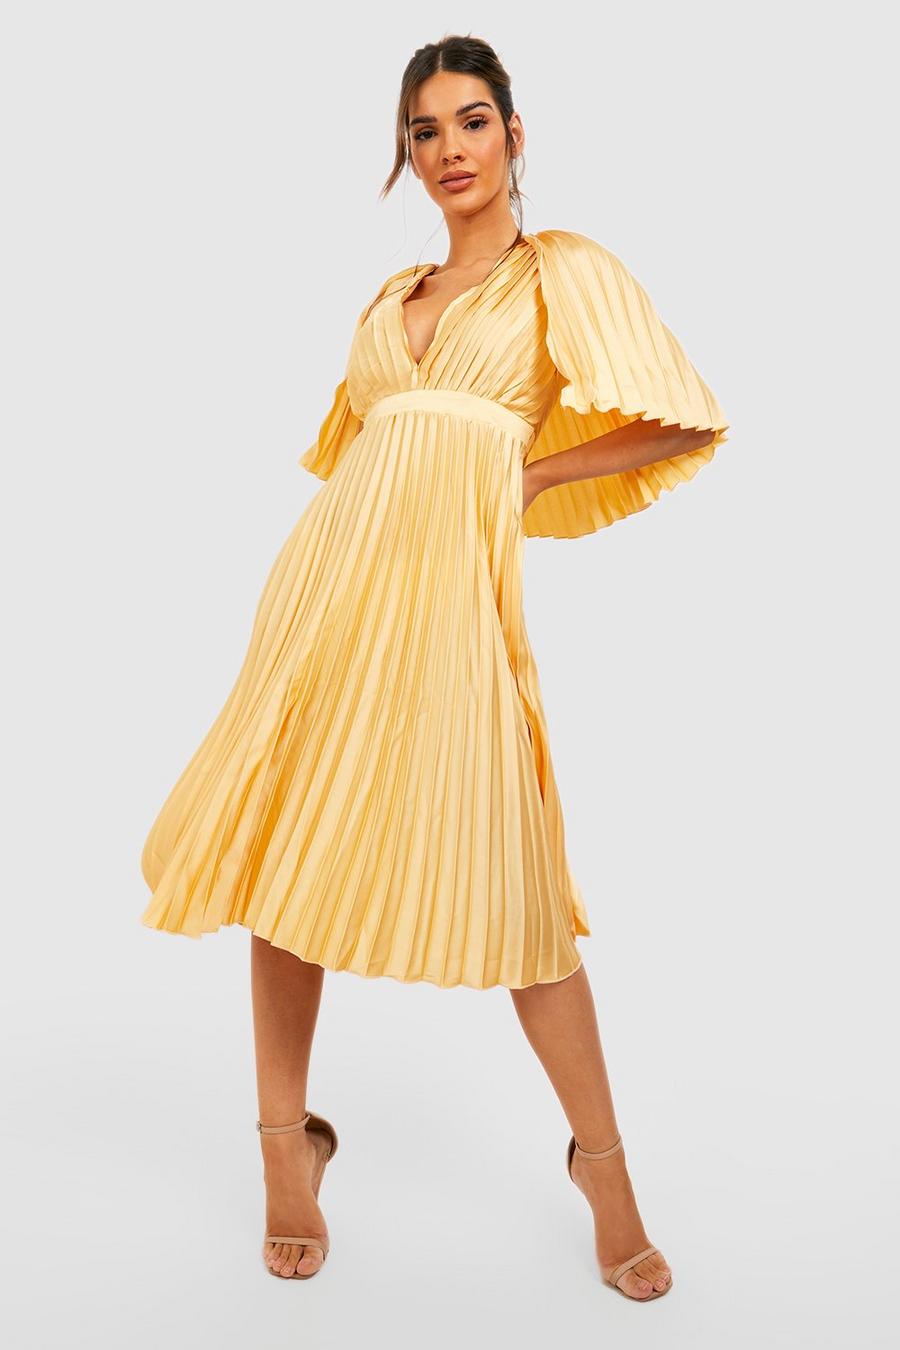 לימון giallo שמלת שושבינה באורך מידי עם קפלים ושכמייה